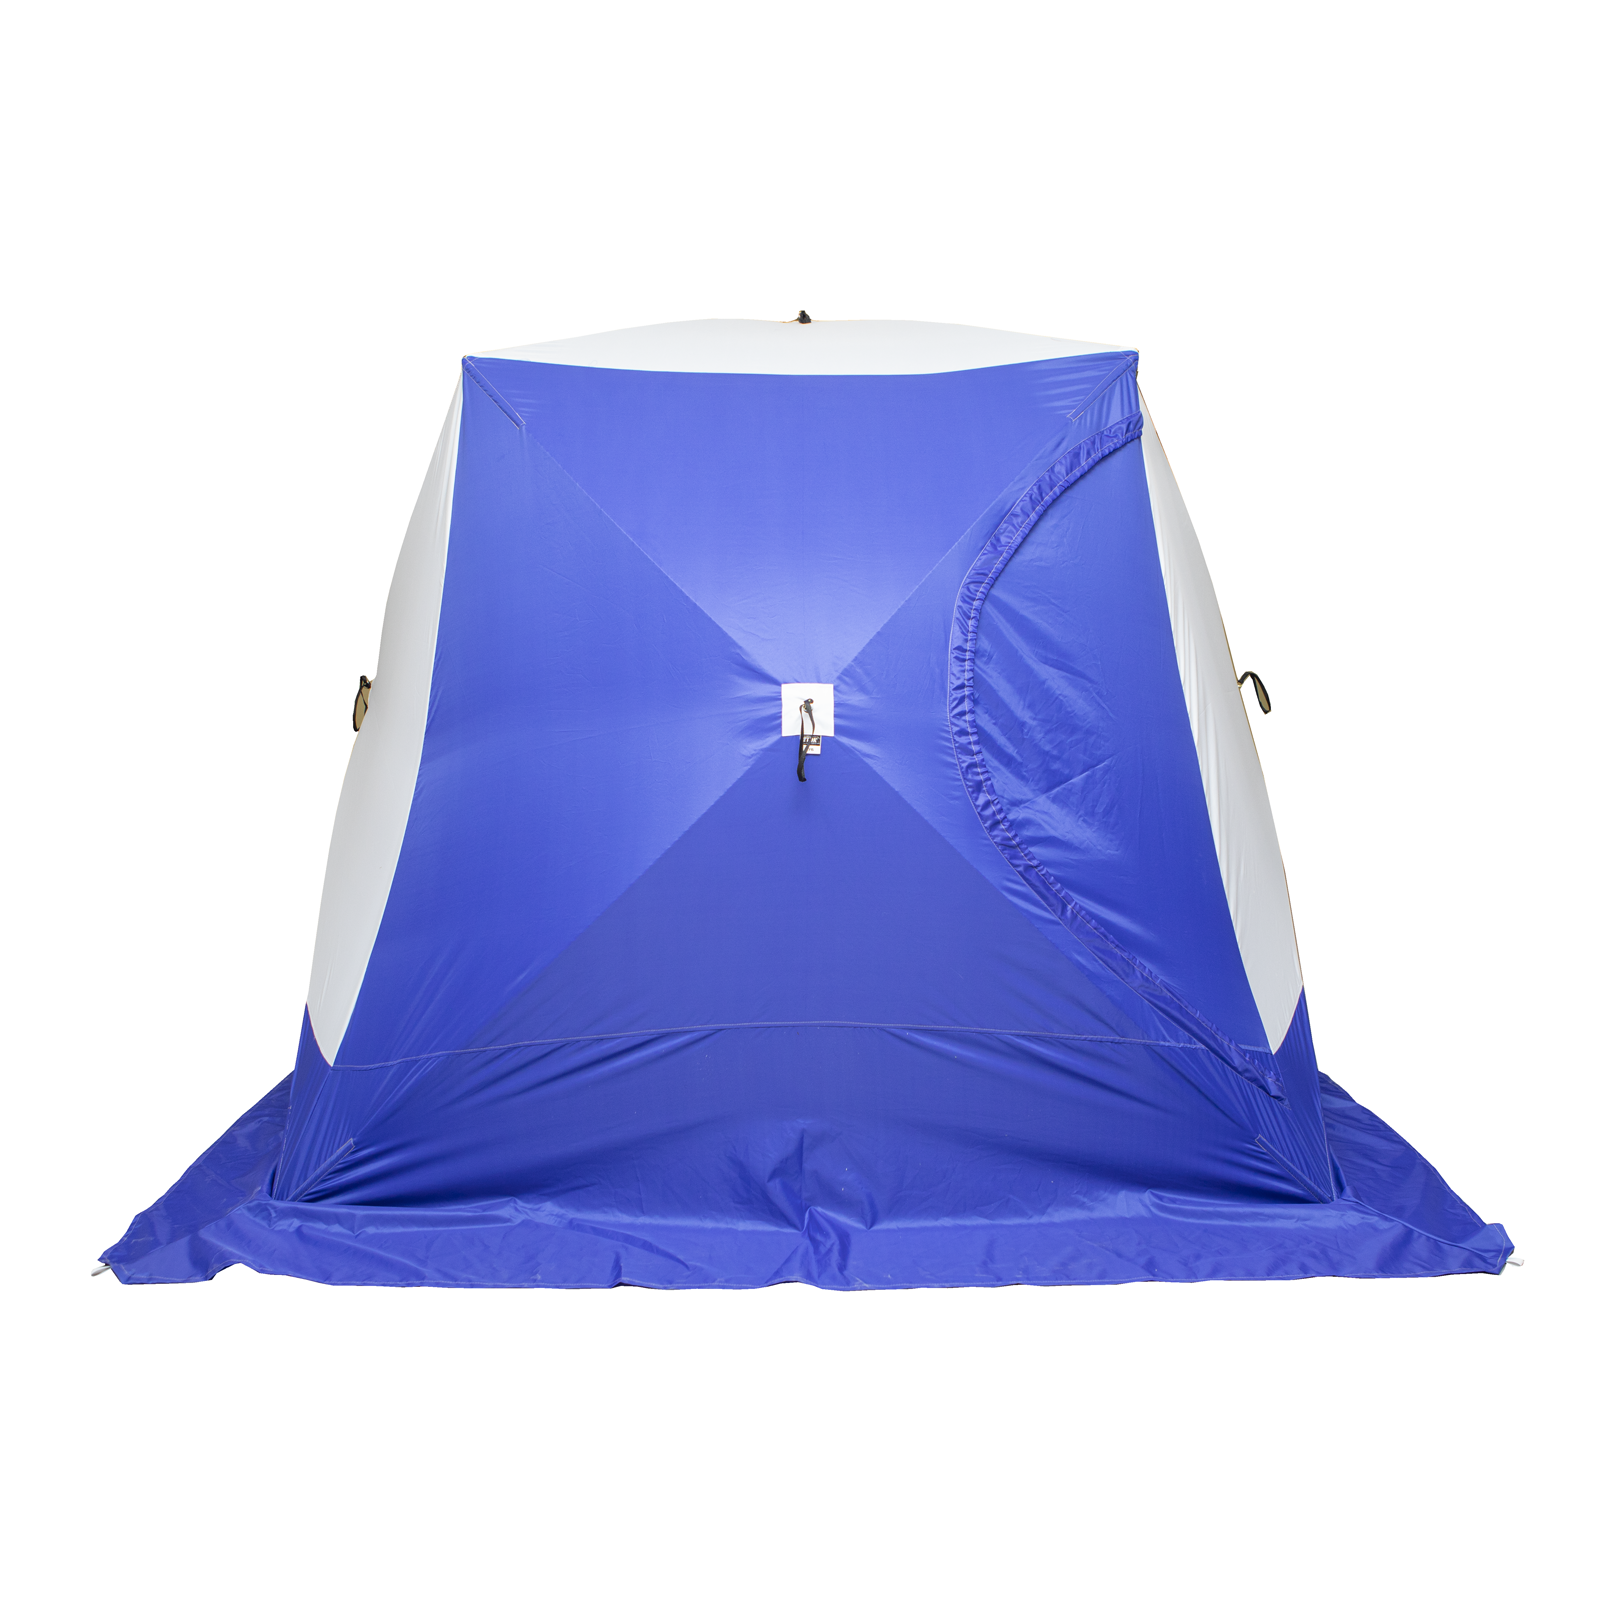 фото Палатка куб 2 трехслойная дышащая стэк